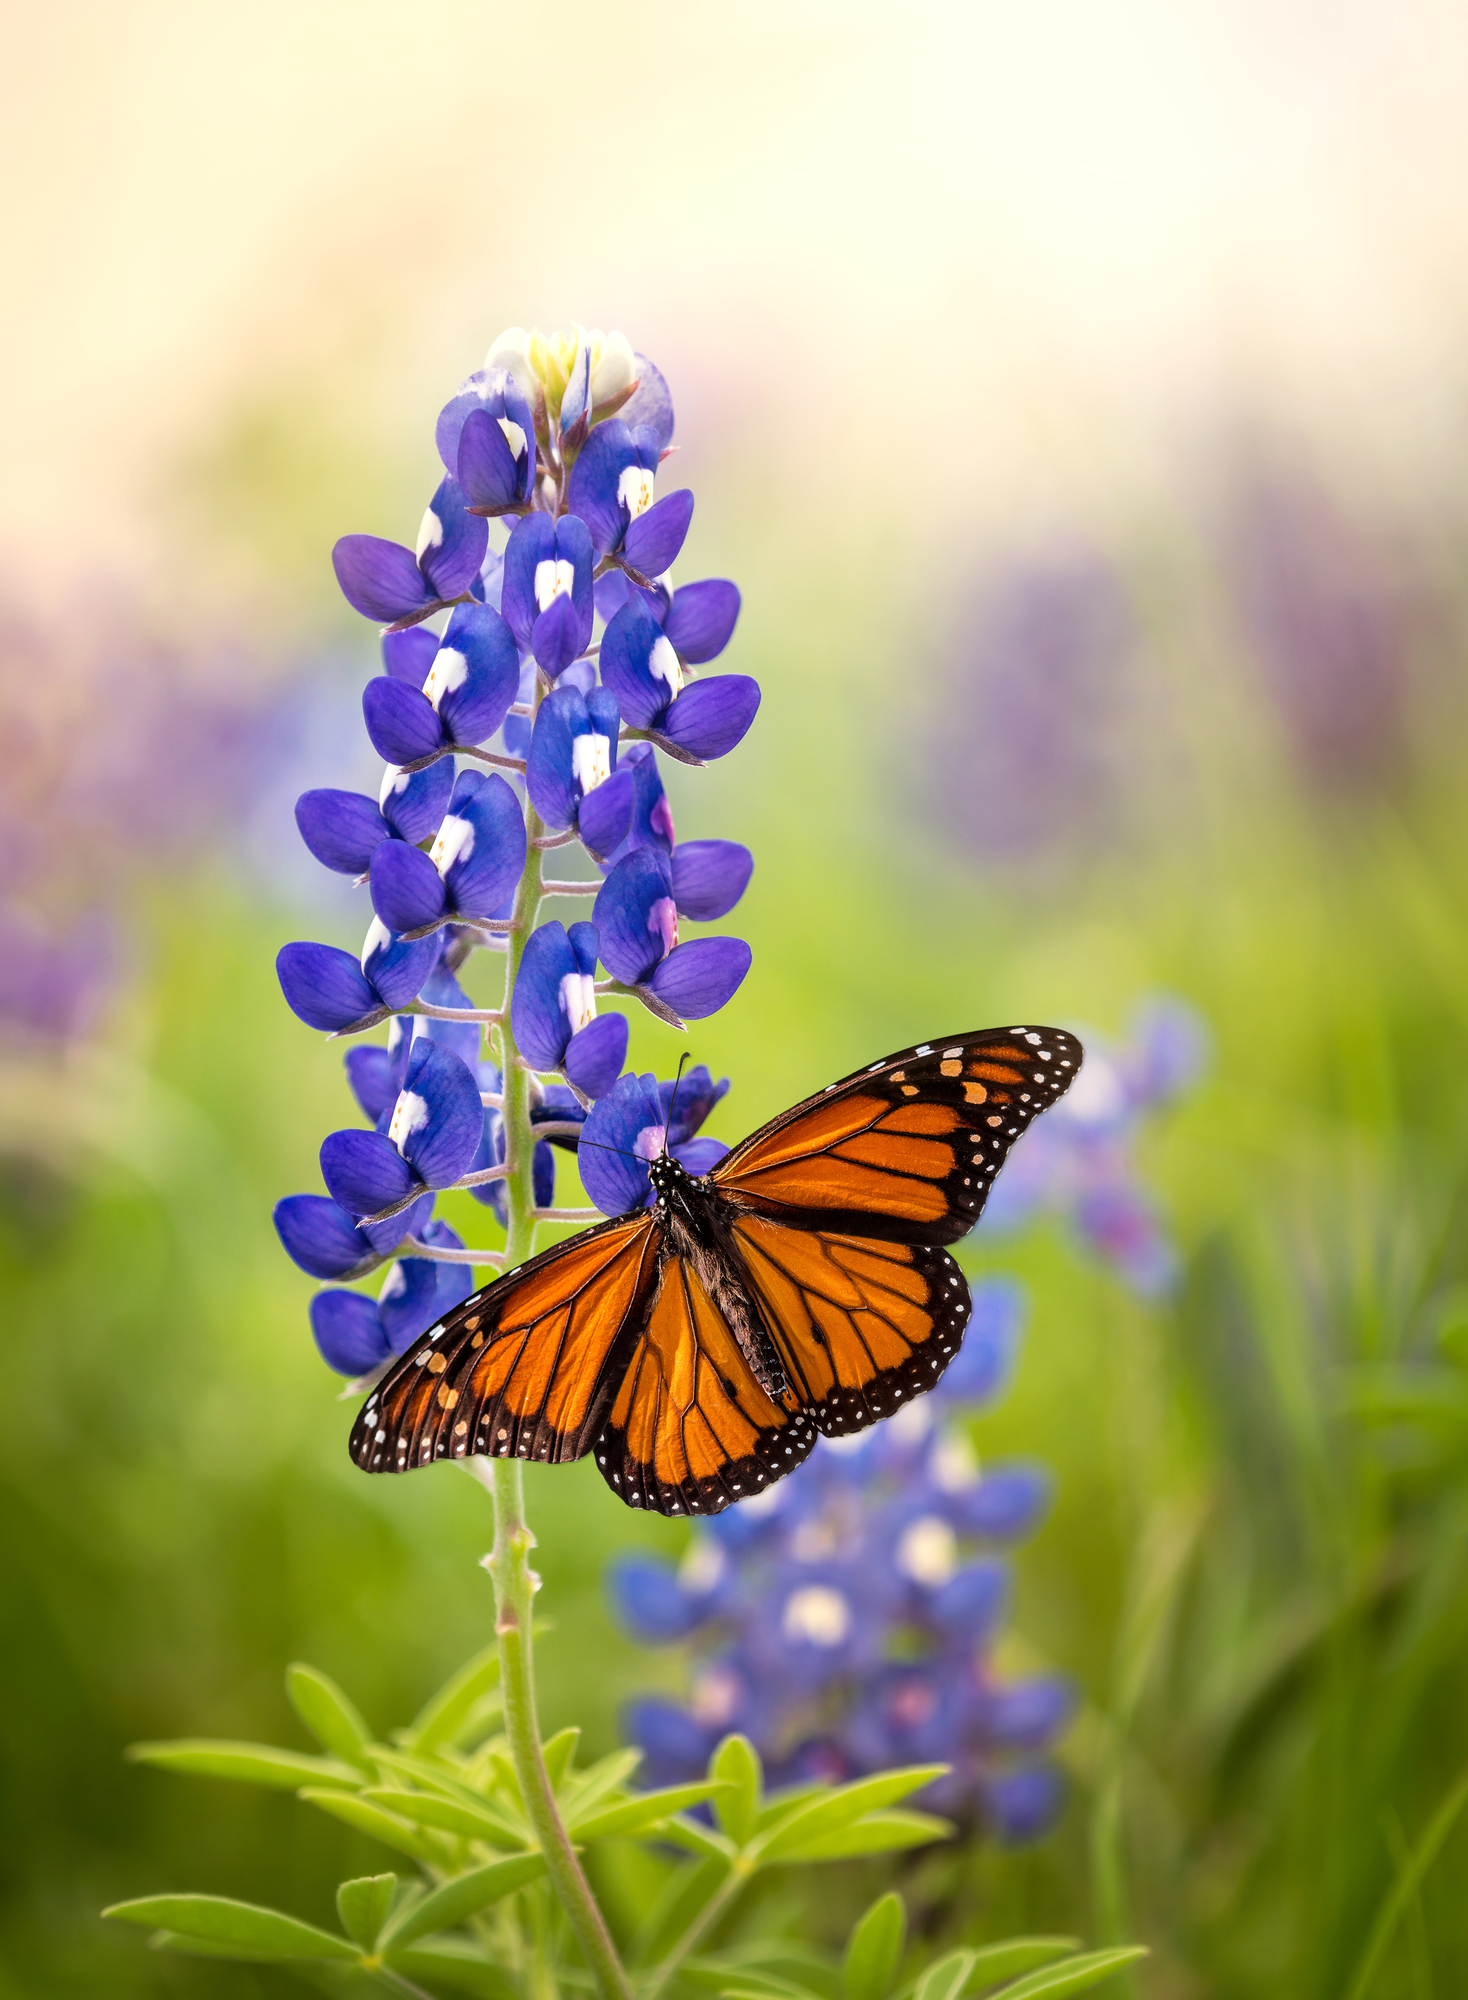 Monarch butterfly on Texas bluebonnet